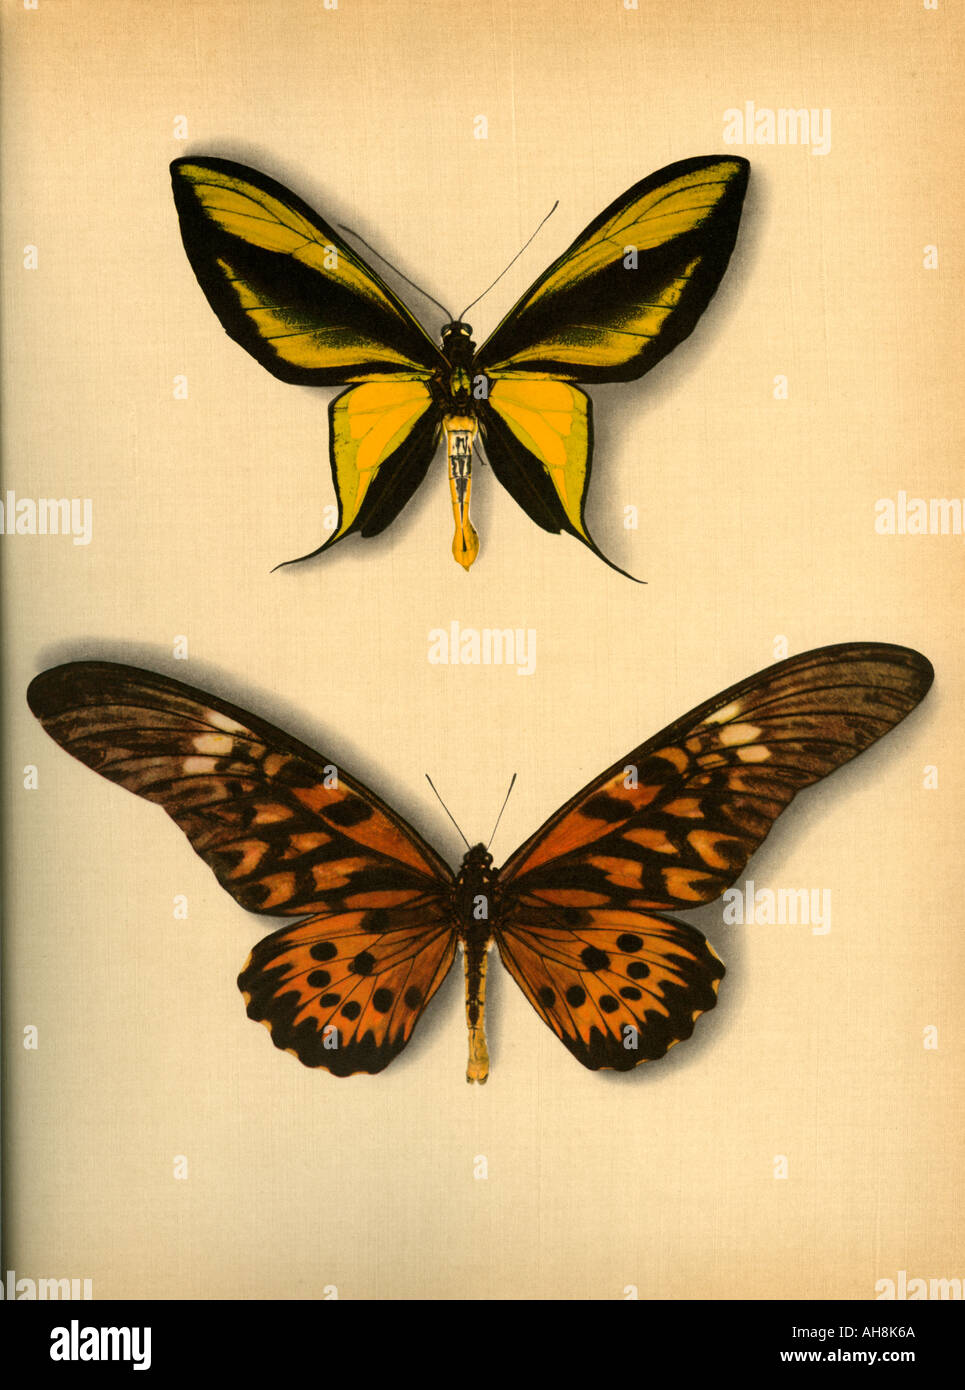 AAD71477 deux papillons papillon coloré artistique Banque D'Images